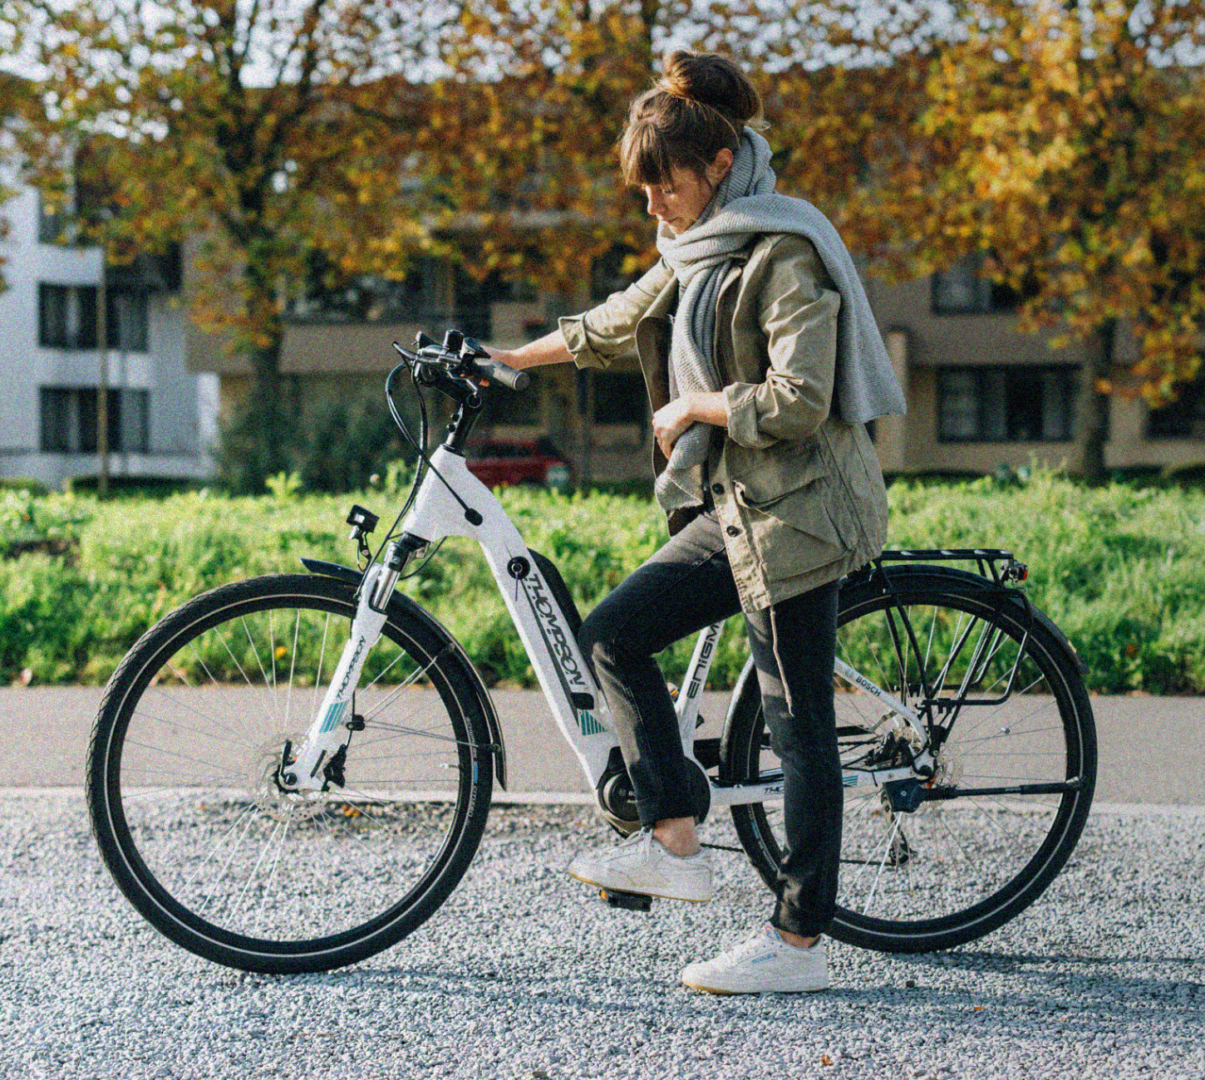 Zonder zweten door stad en natuur? Met gemak voorbij de file? Ontdek onze betaalbare en betrouwbare e-bikes van topmerken. Nearly new én in topvorm. 